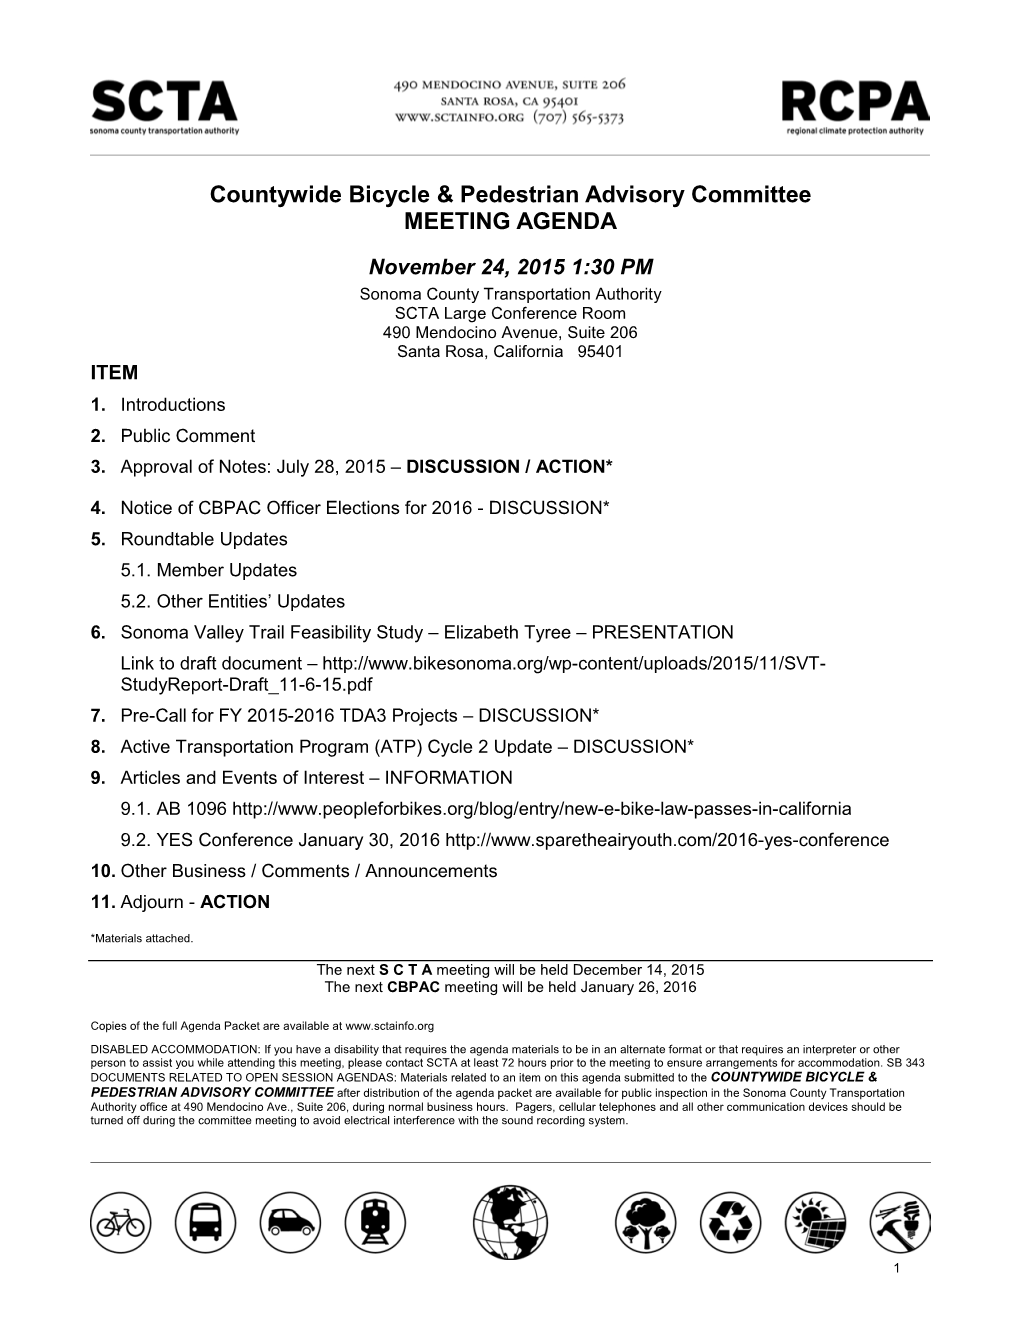 Technical Advisory Committee Meeting Agenda for November 24, 2015